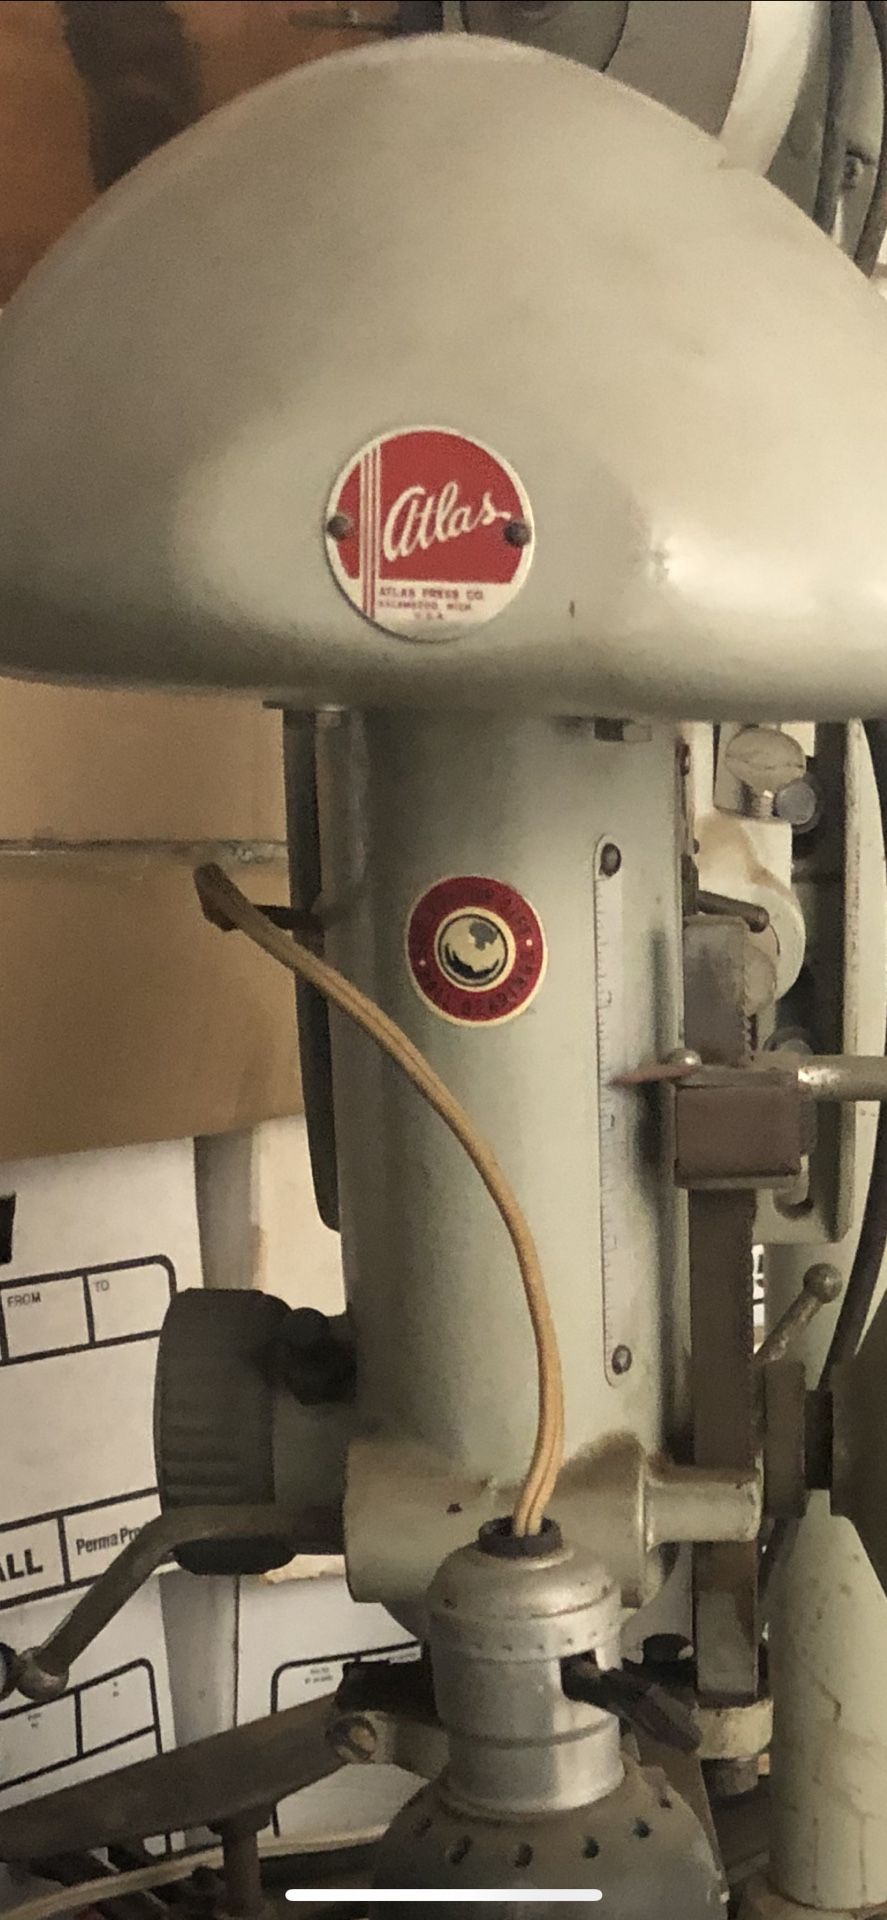 Vintage atlas drill press